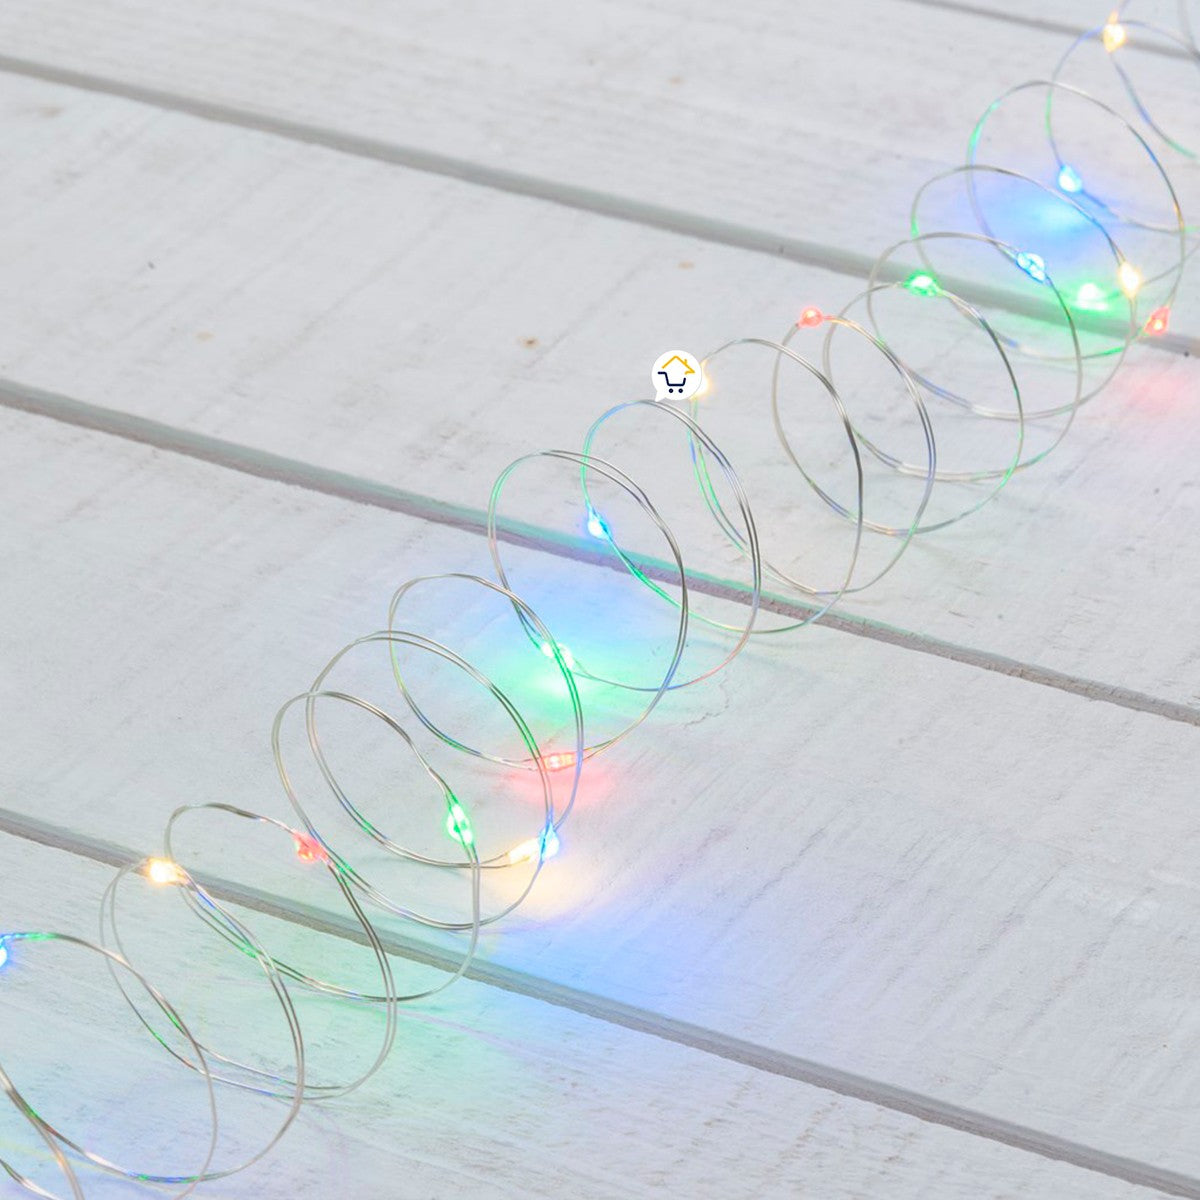 Extensión Micro LED Lineal 20 m 200 Luces Navidad Multicolor 1553